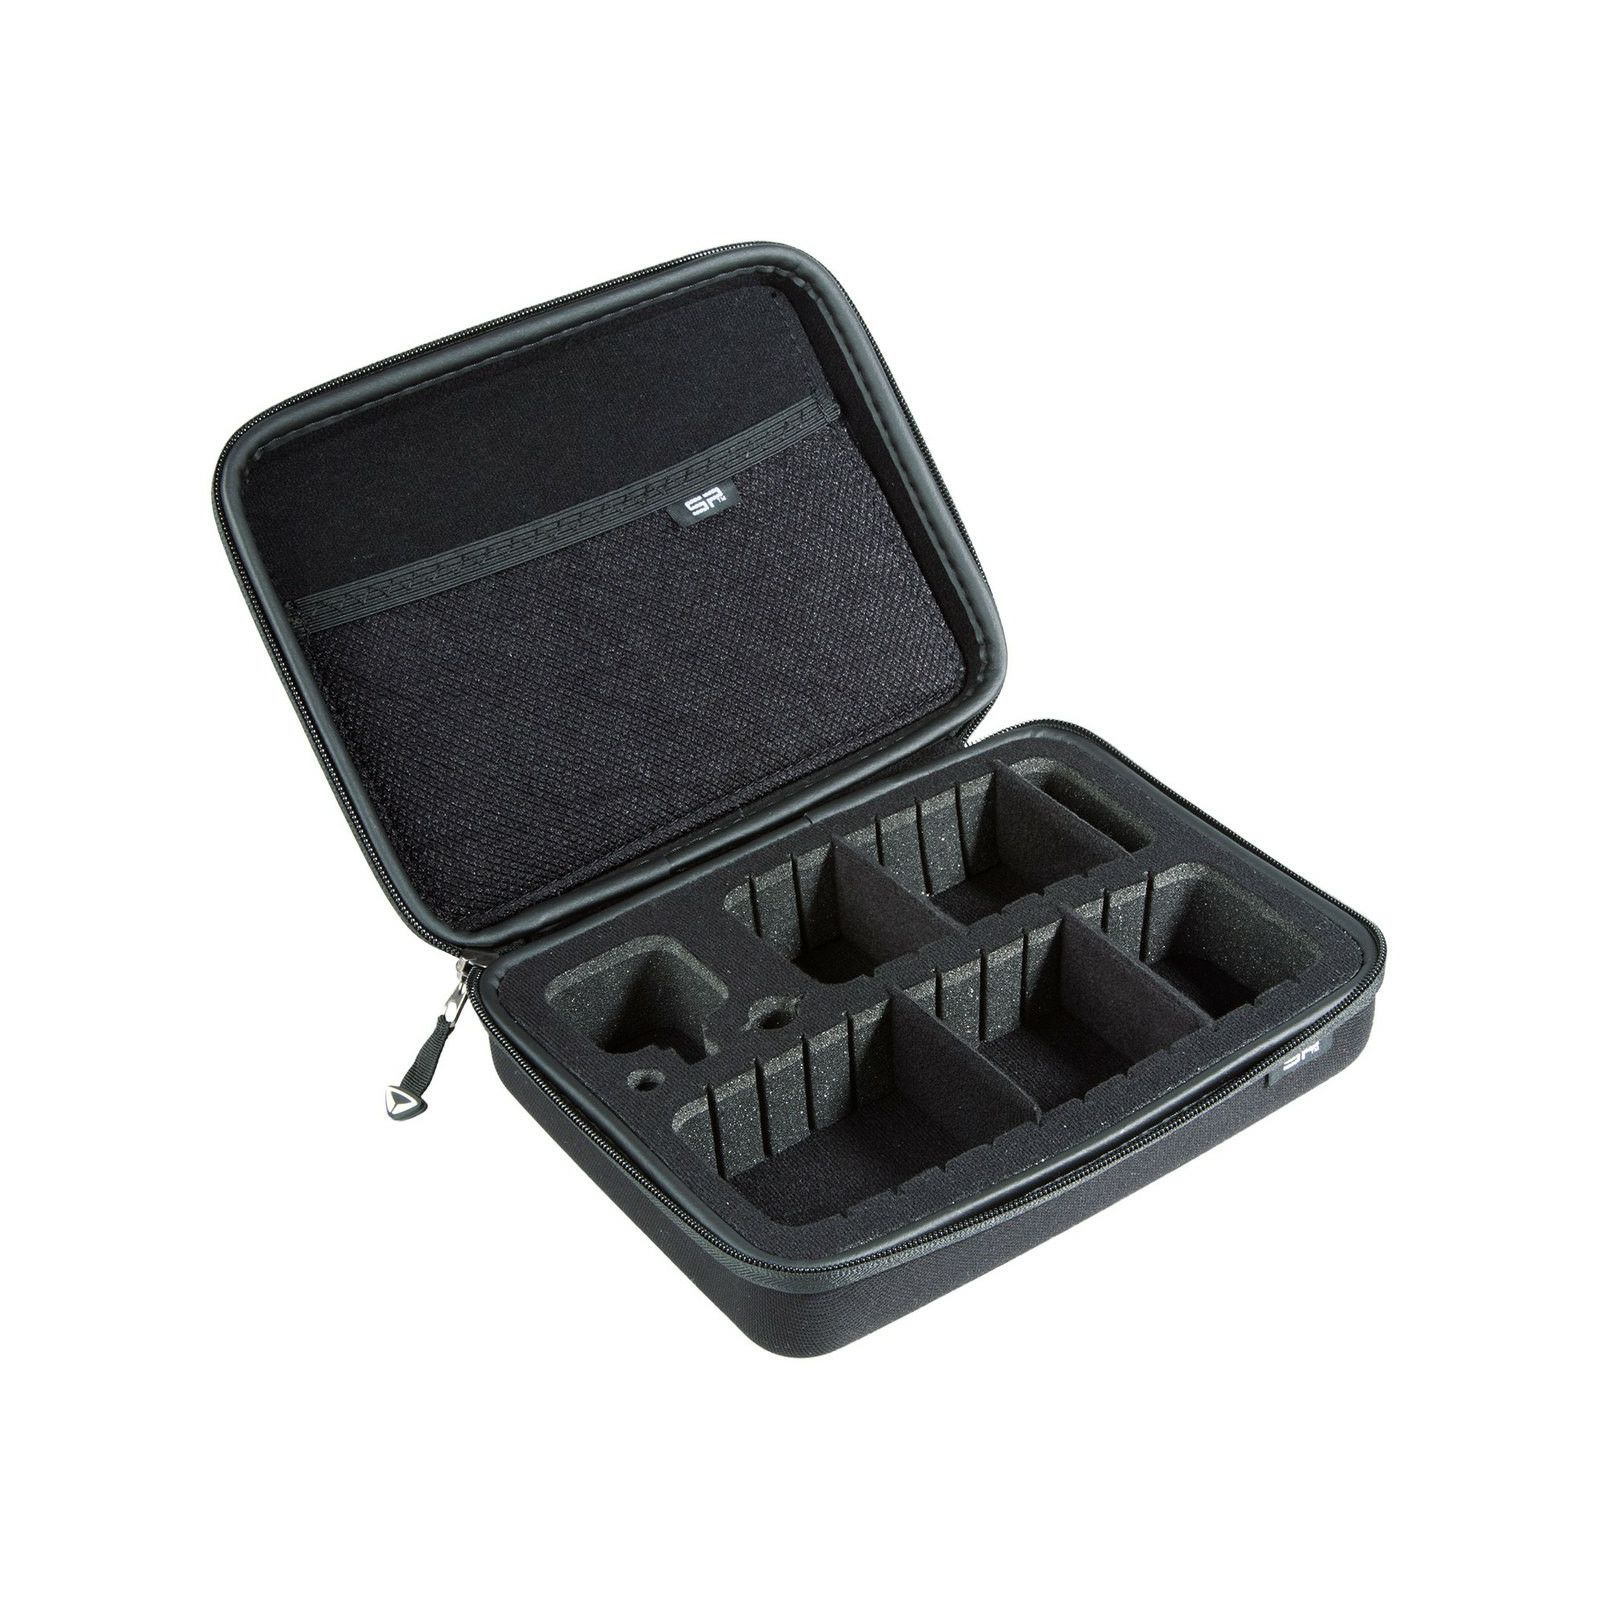 SP Gadgets SP POV Case XS Session black size XS SKU 53032 CASES Classic